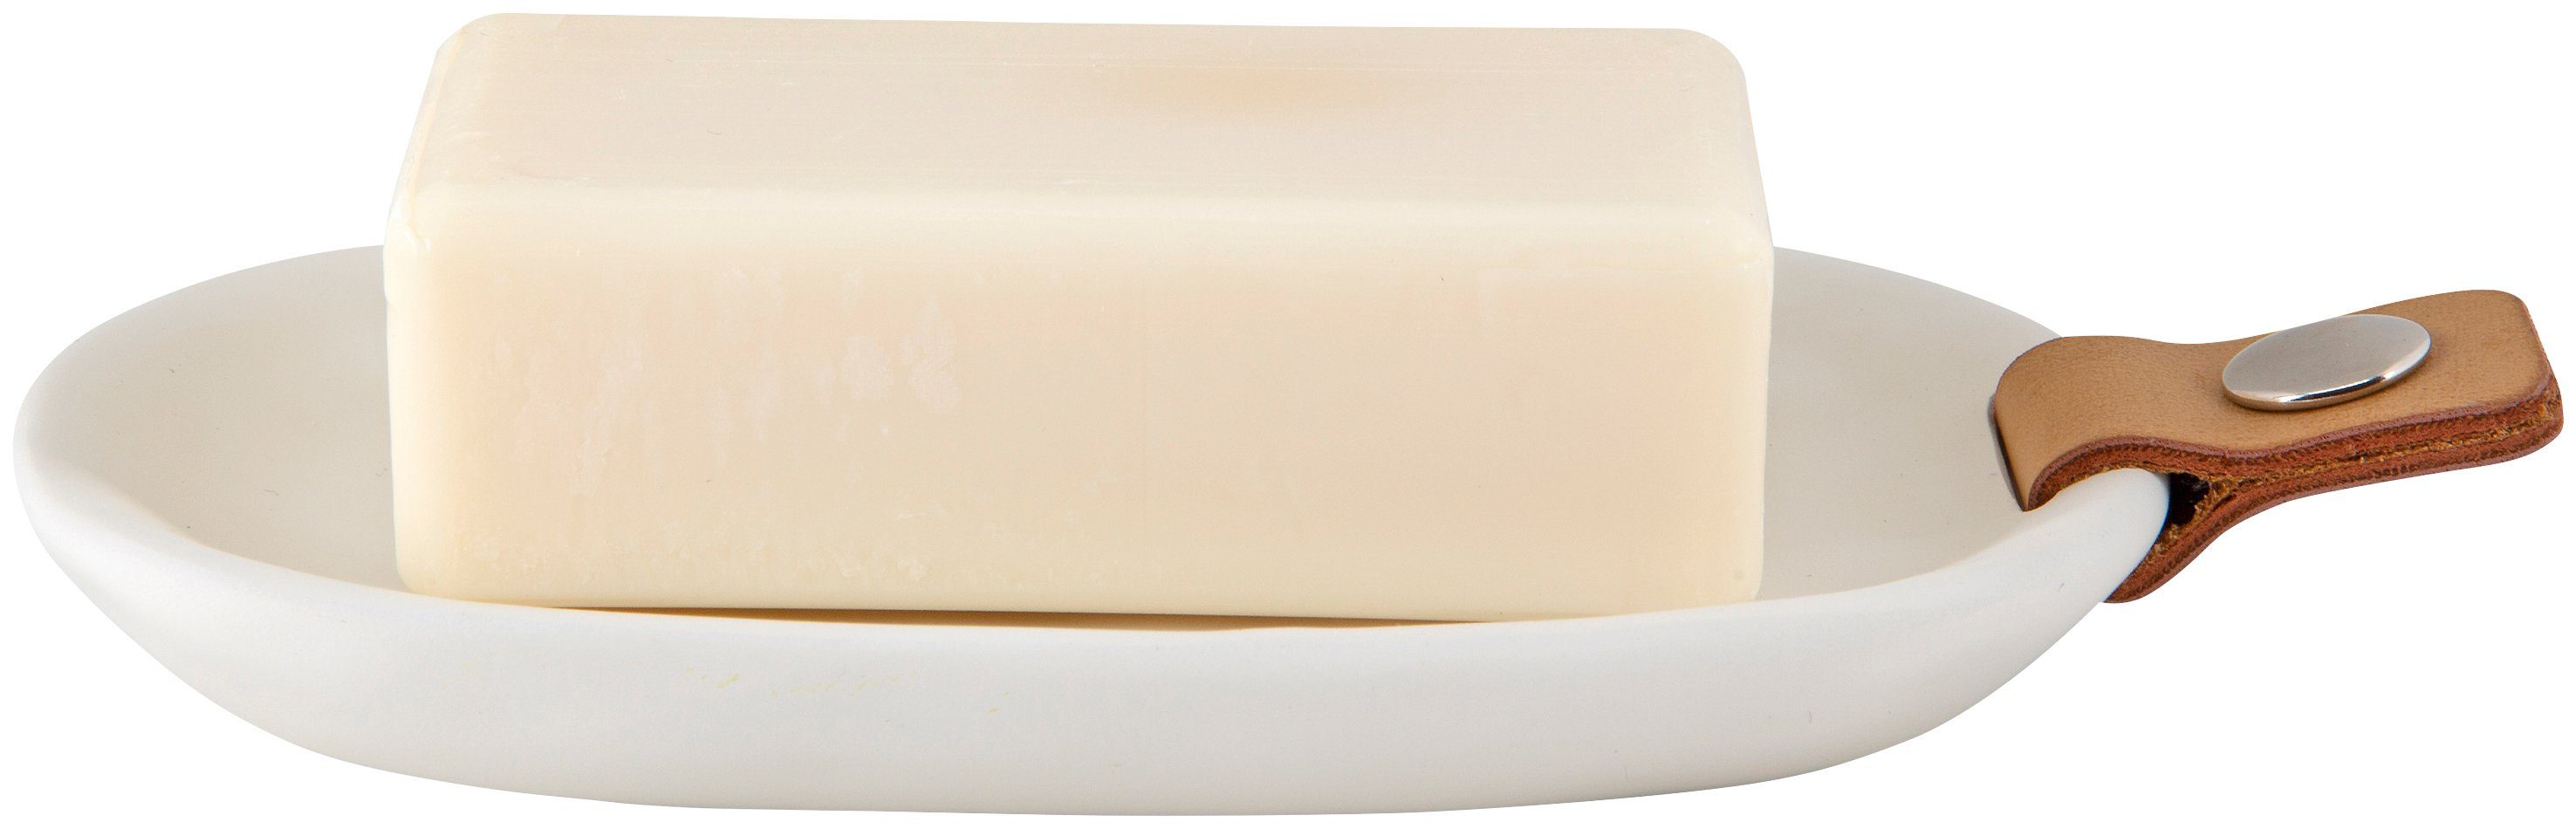 spirella Seifenschale Lio, Breite: 12,7 cm, Seifenschale zur stilvollen und  sauberen Ablage Ihrer Seife